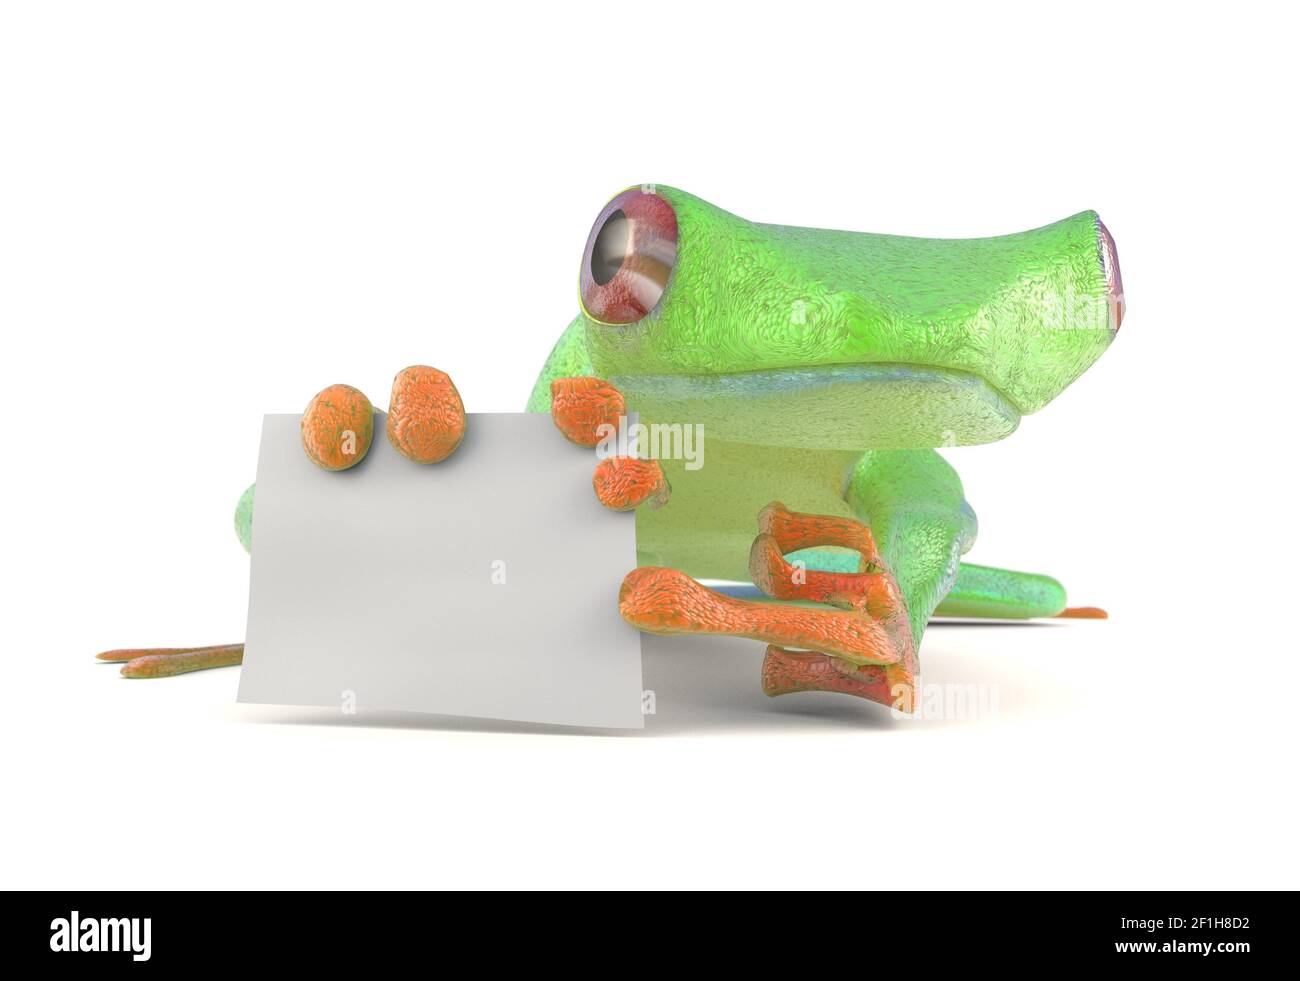 Frog cartoon posing Banque d'images détourées - Alamy